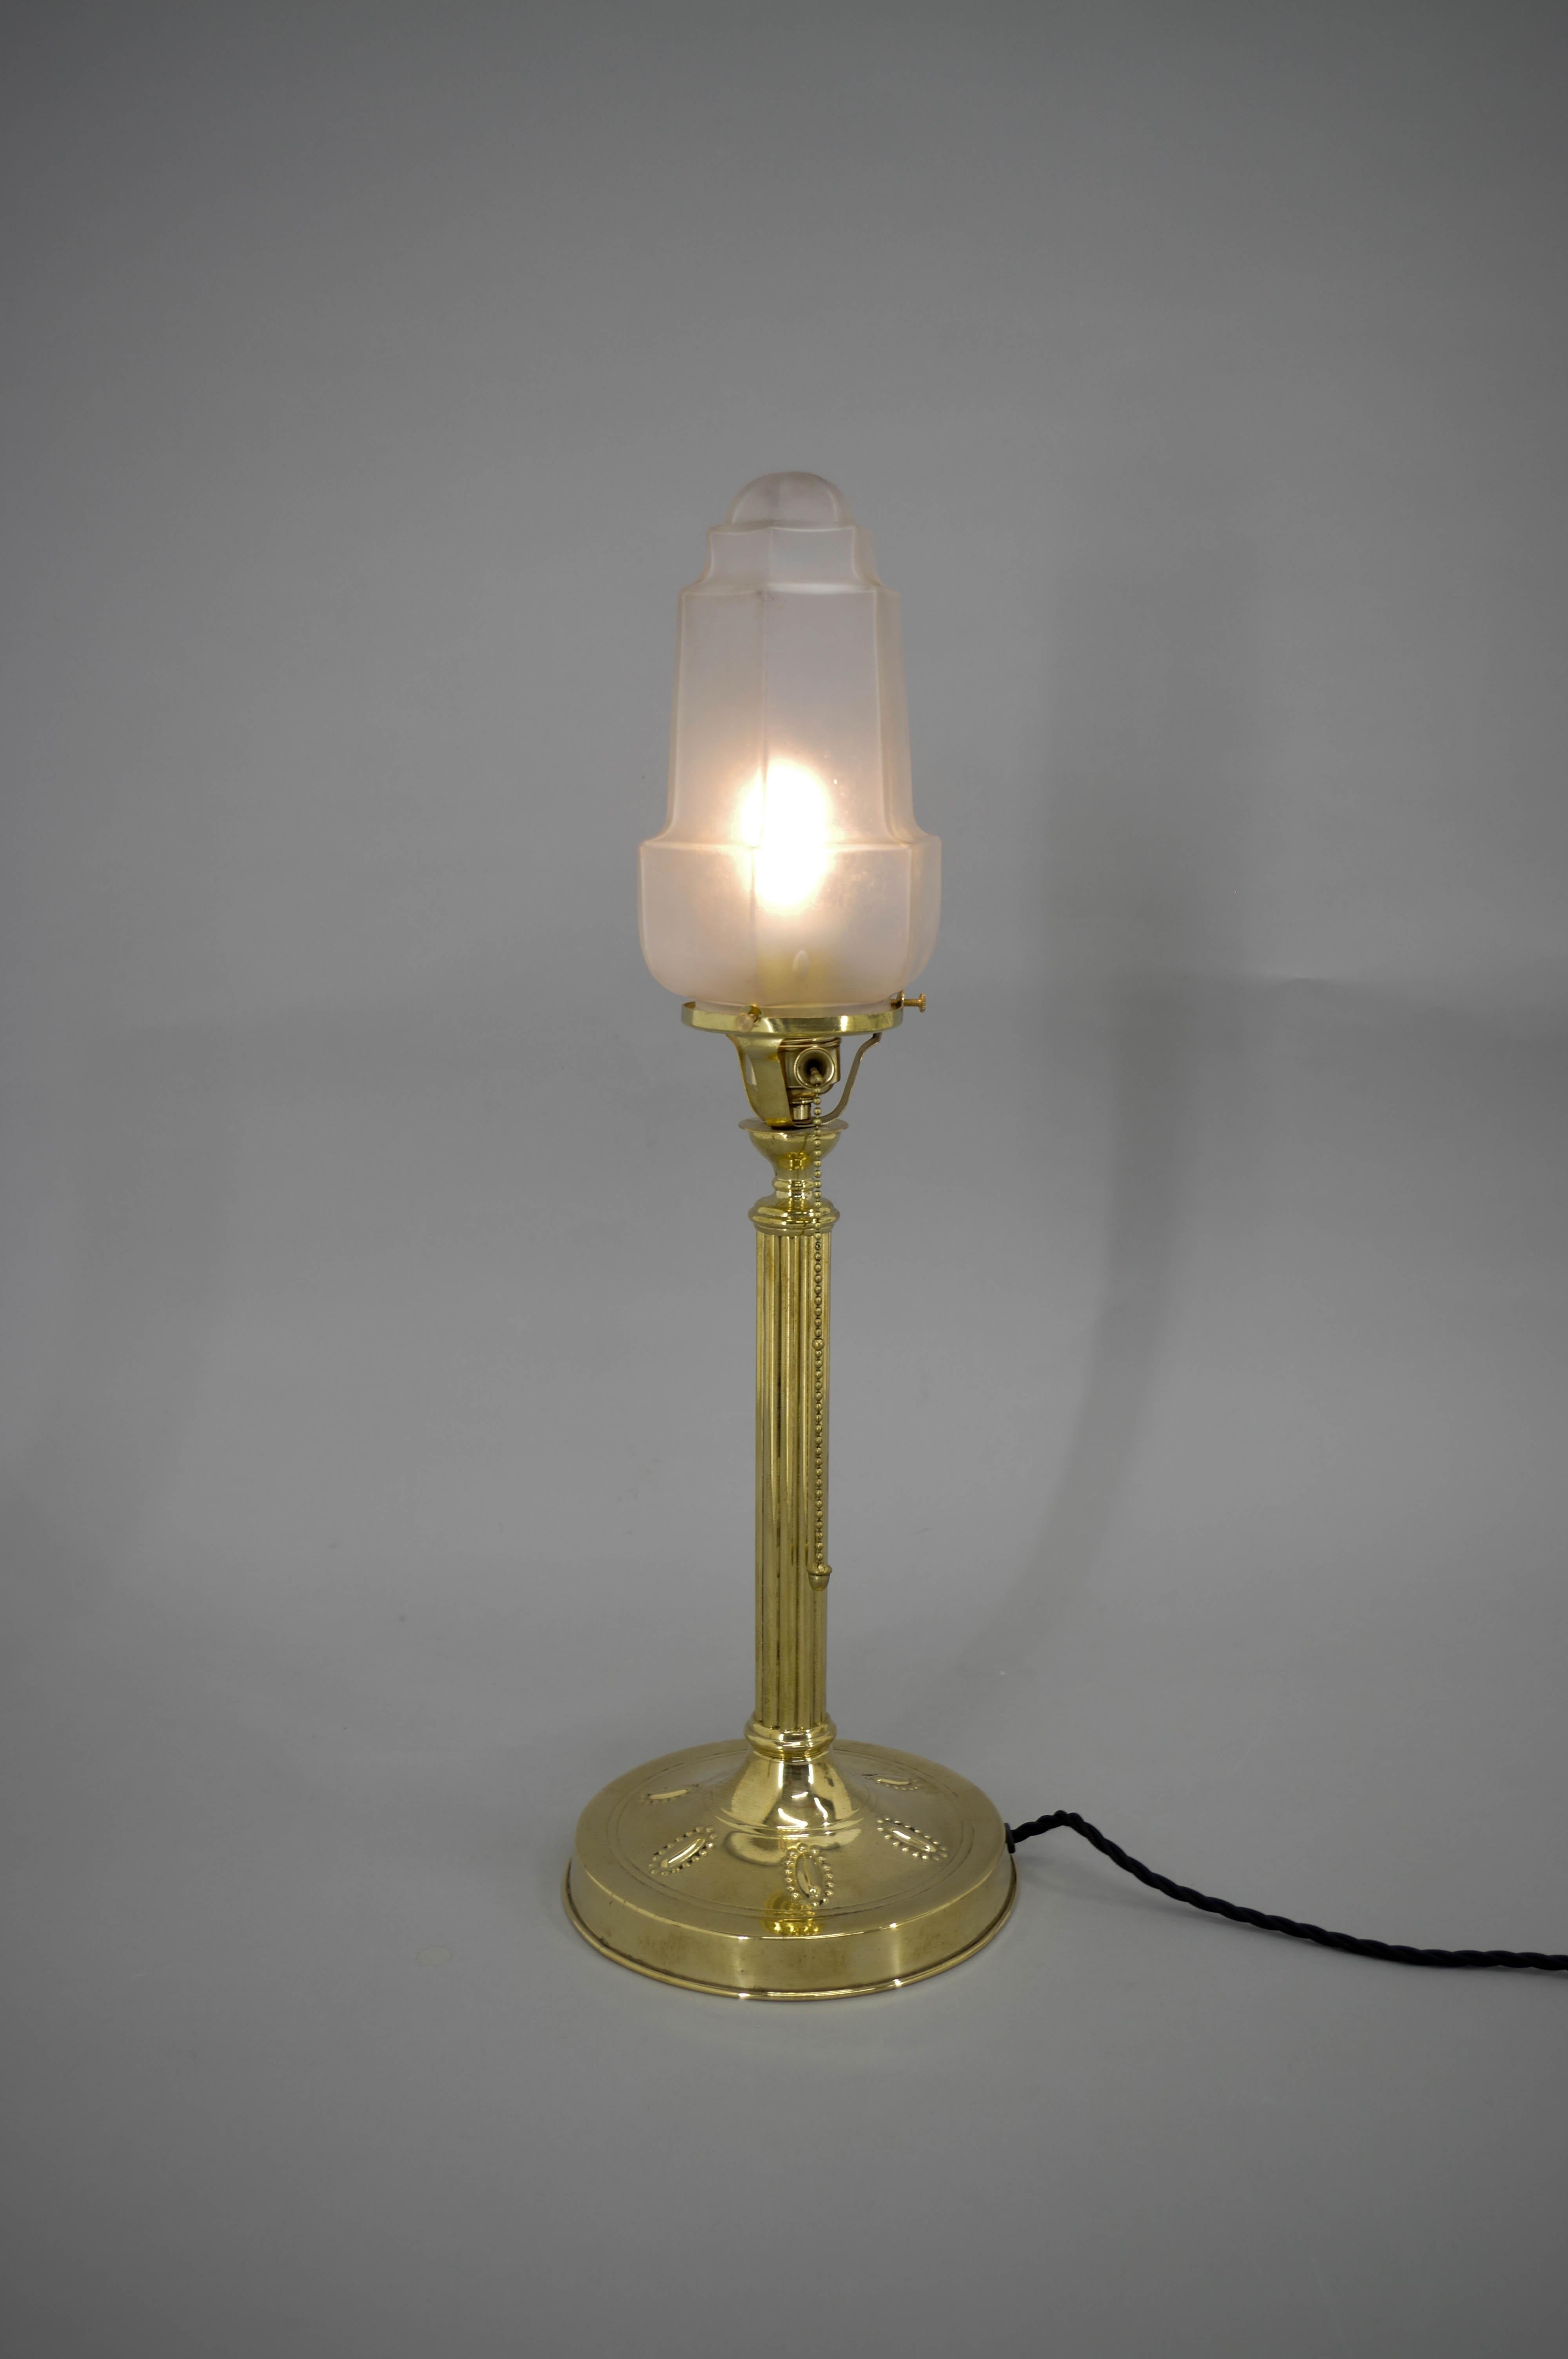 Jugendstil-Tischlampe, hergestellt in Österreich in den 1910er Jahren.
Restauriert: gereinigt, poliert, neu verkabelt
1x40W, E25-E27 Glühbirne
Inklusive US-Steckeradapter